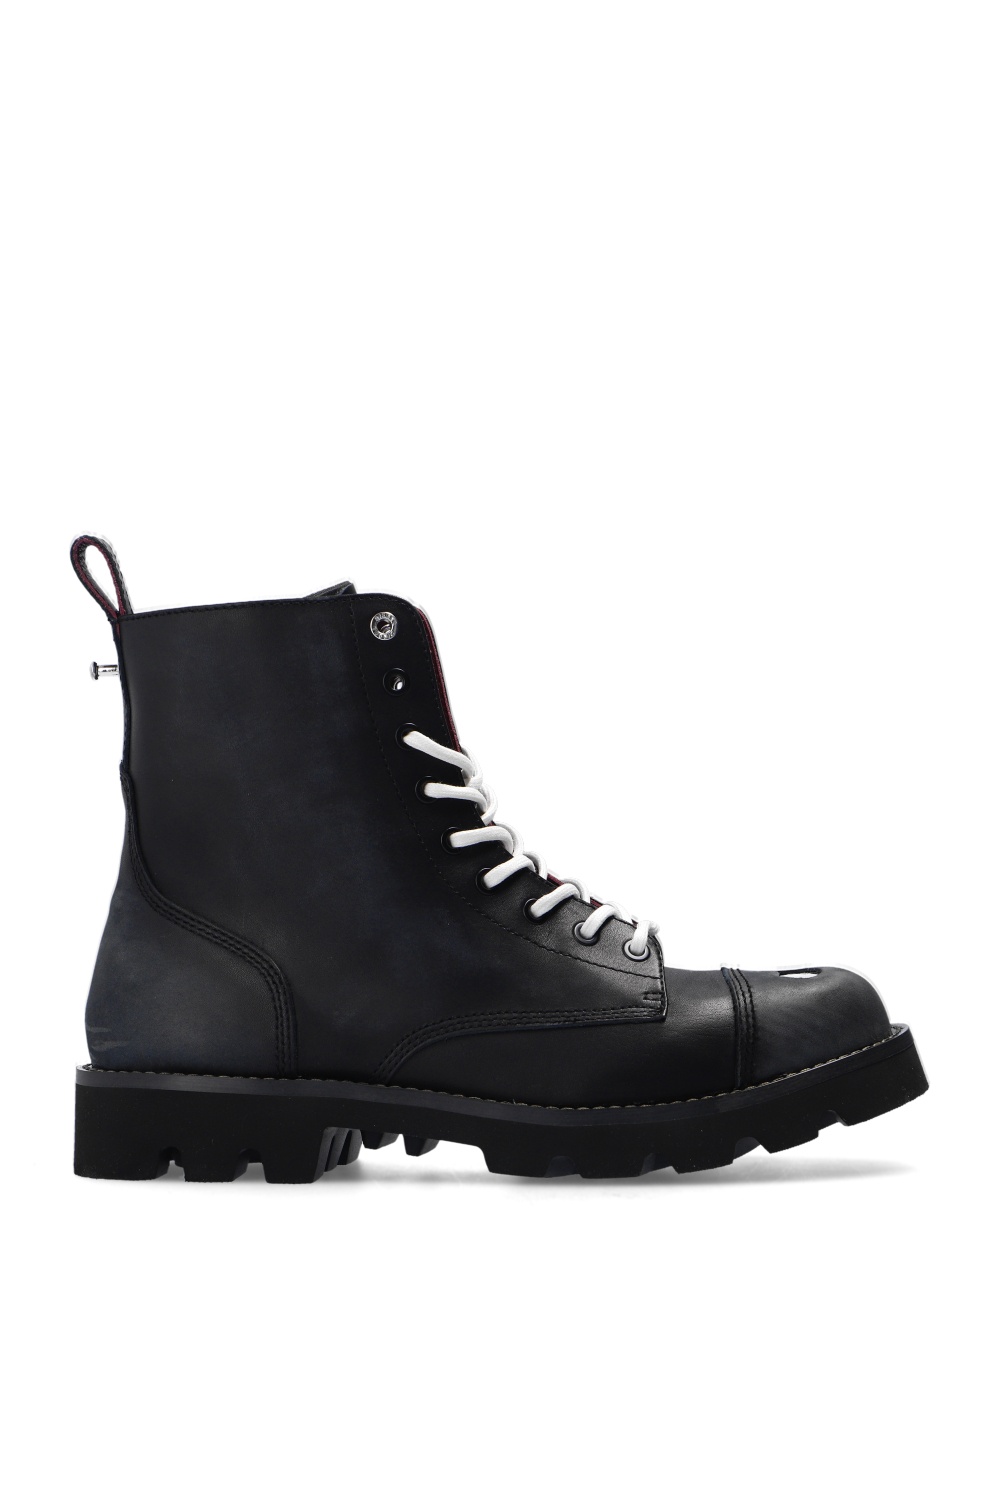 Diesel 'D-Konba' leather ankle boots | Men's Shoes | Vitkac